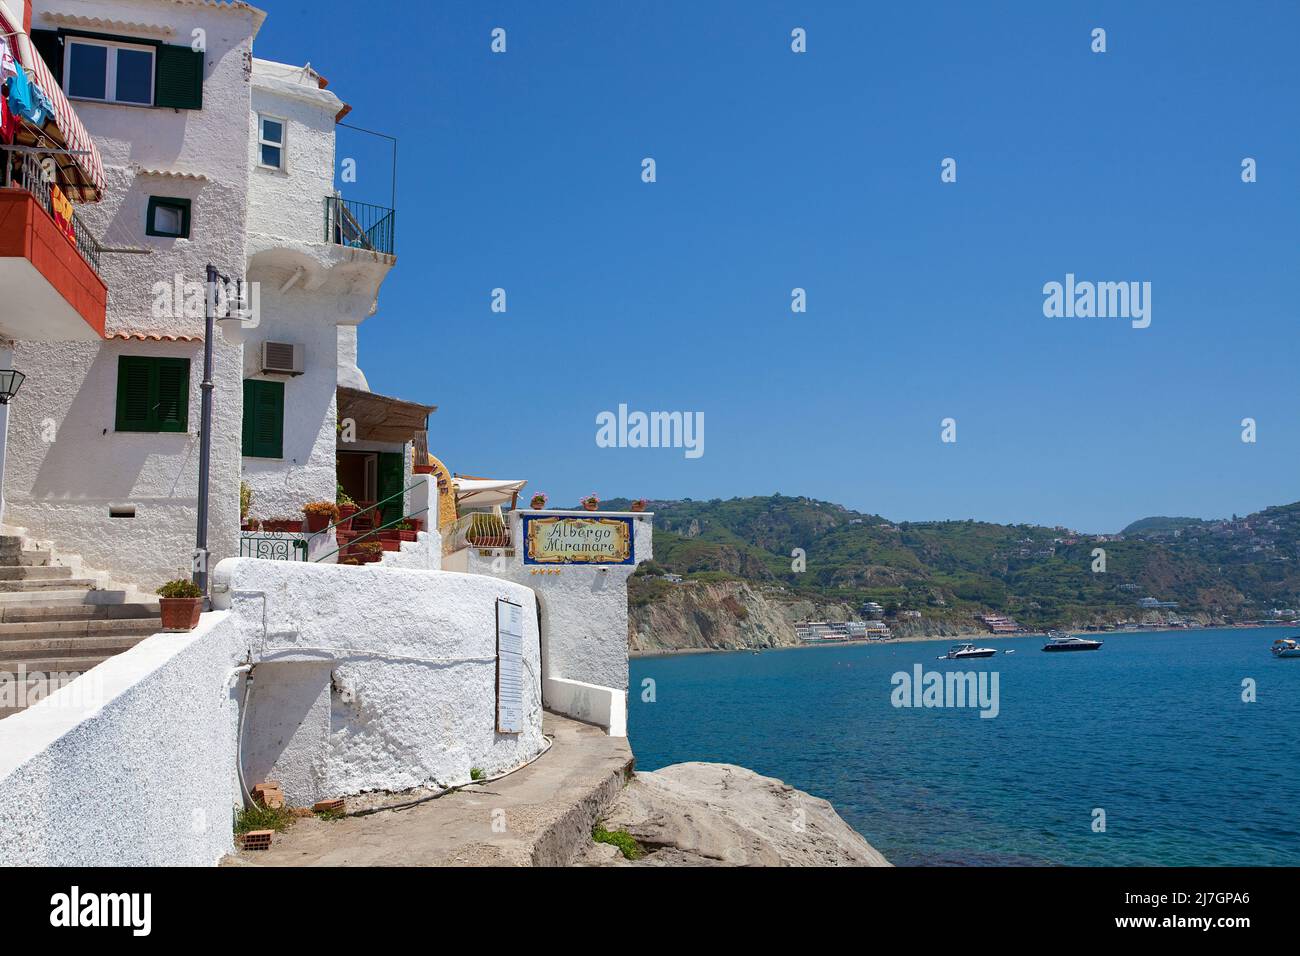 Traditionelle weiße Häuser im malerischen Fischerdorf Sant' Angelo, Insel Ischia, Golf von Neapel, Italien, Mittelmeer, Europa Stockfoto